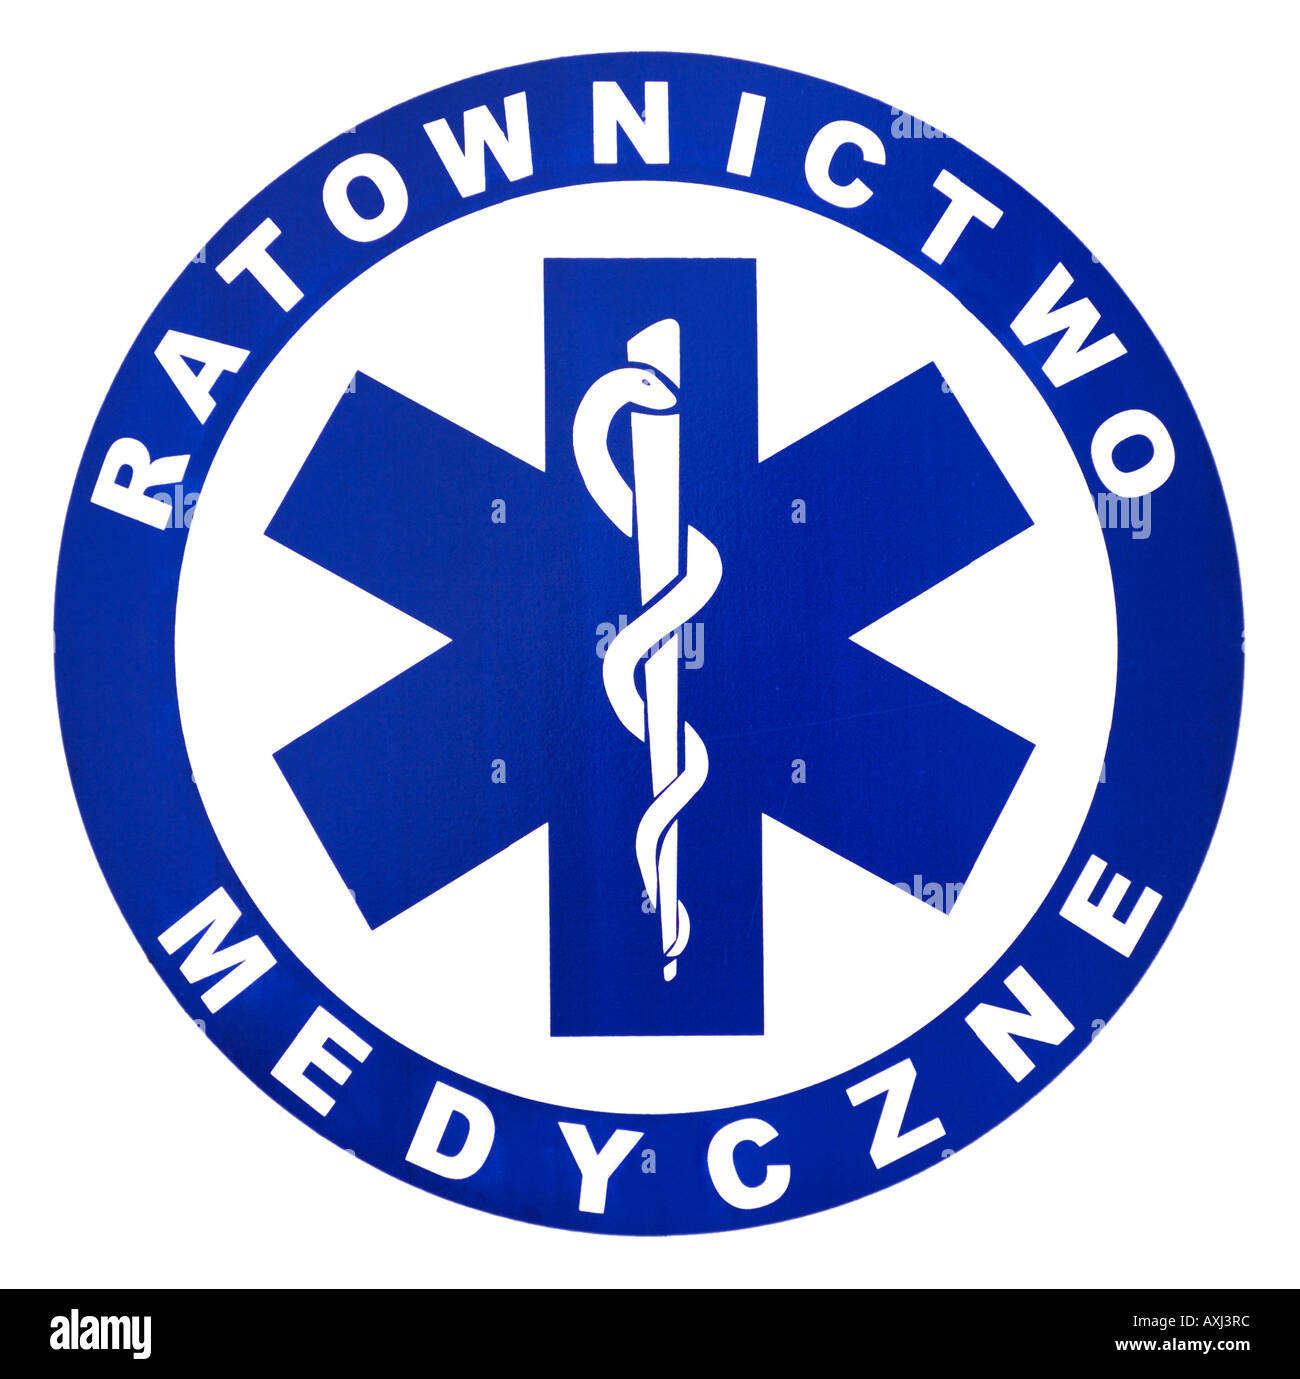 Poland ambulance vehicle emblem Stock Photo